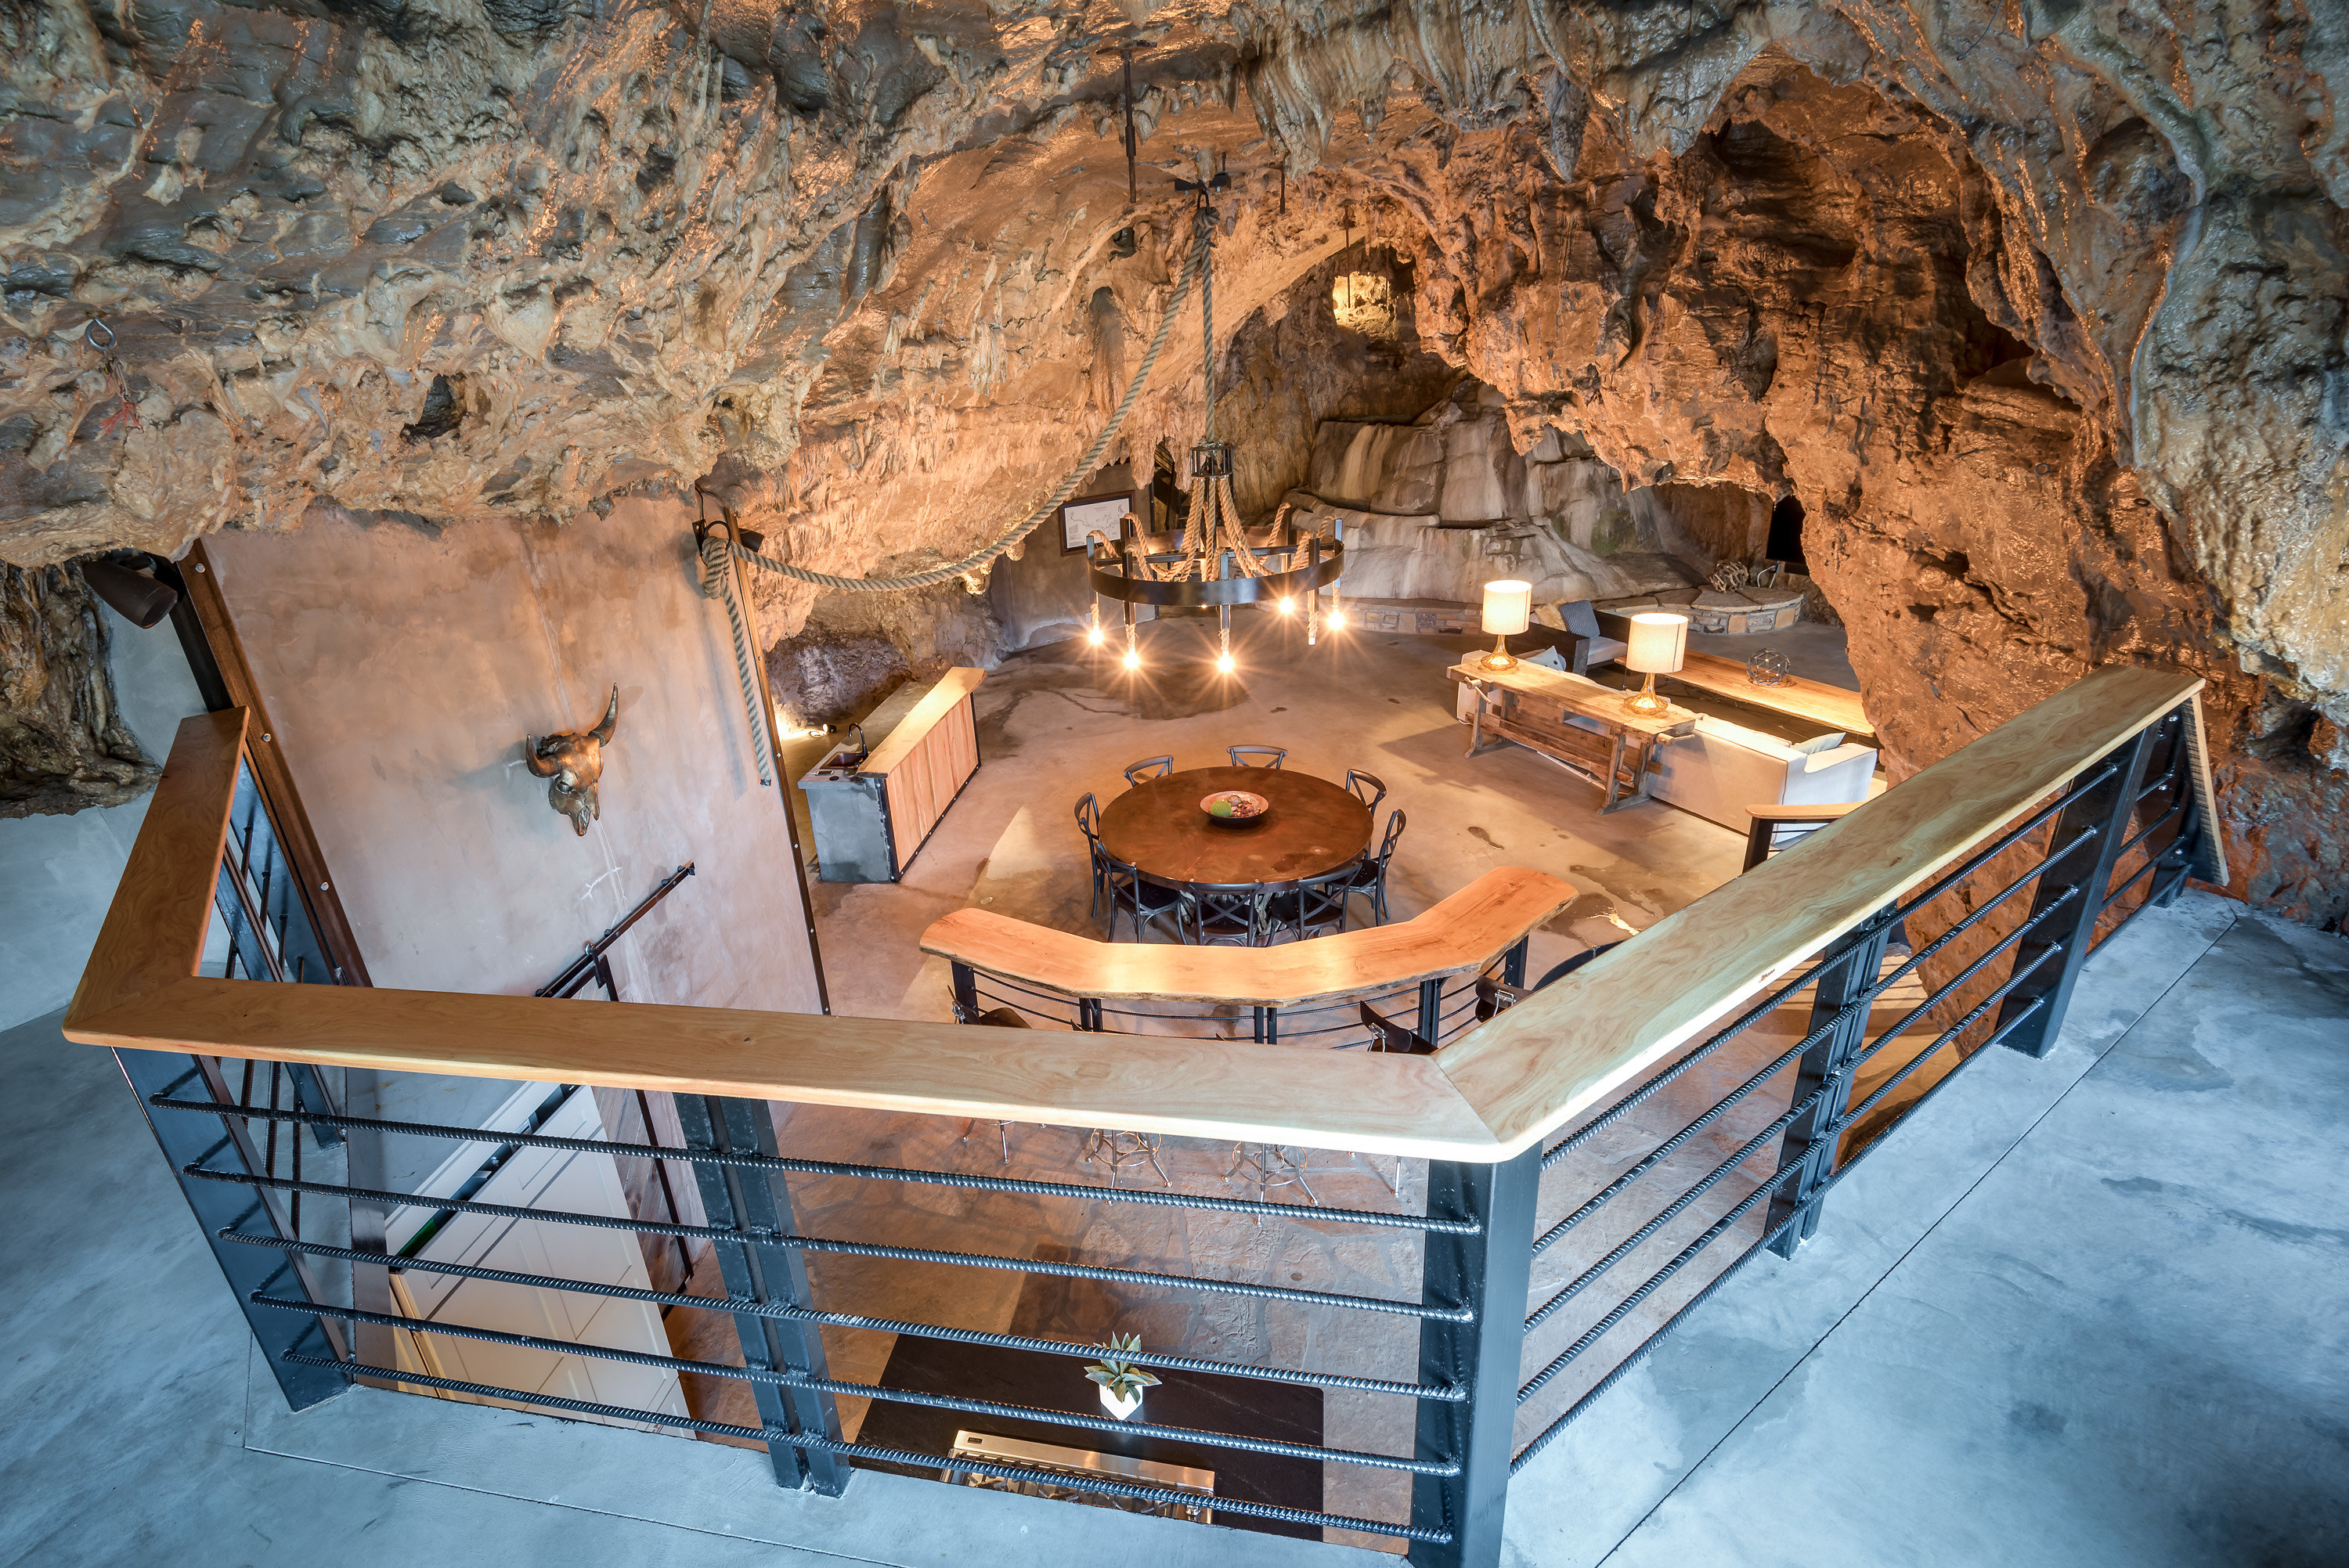 Дом в пещере у китайцев 5. Пещерный дворец Cave Palace Ranch, Юта, США. Вилла Берлускони подземный грот. Пещера Кейв крик. Beckham Creek Cave Lodge.